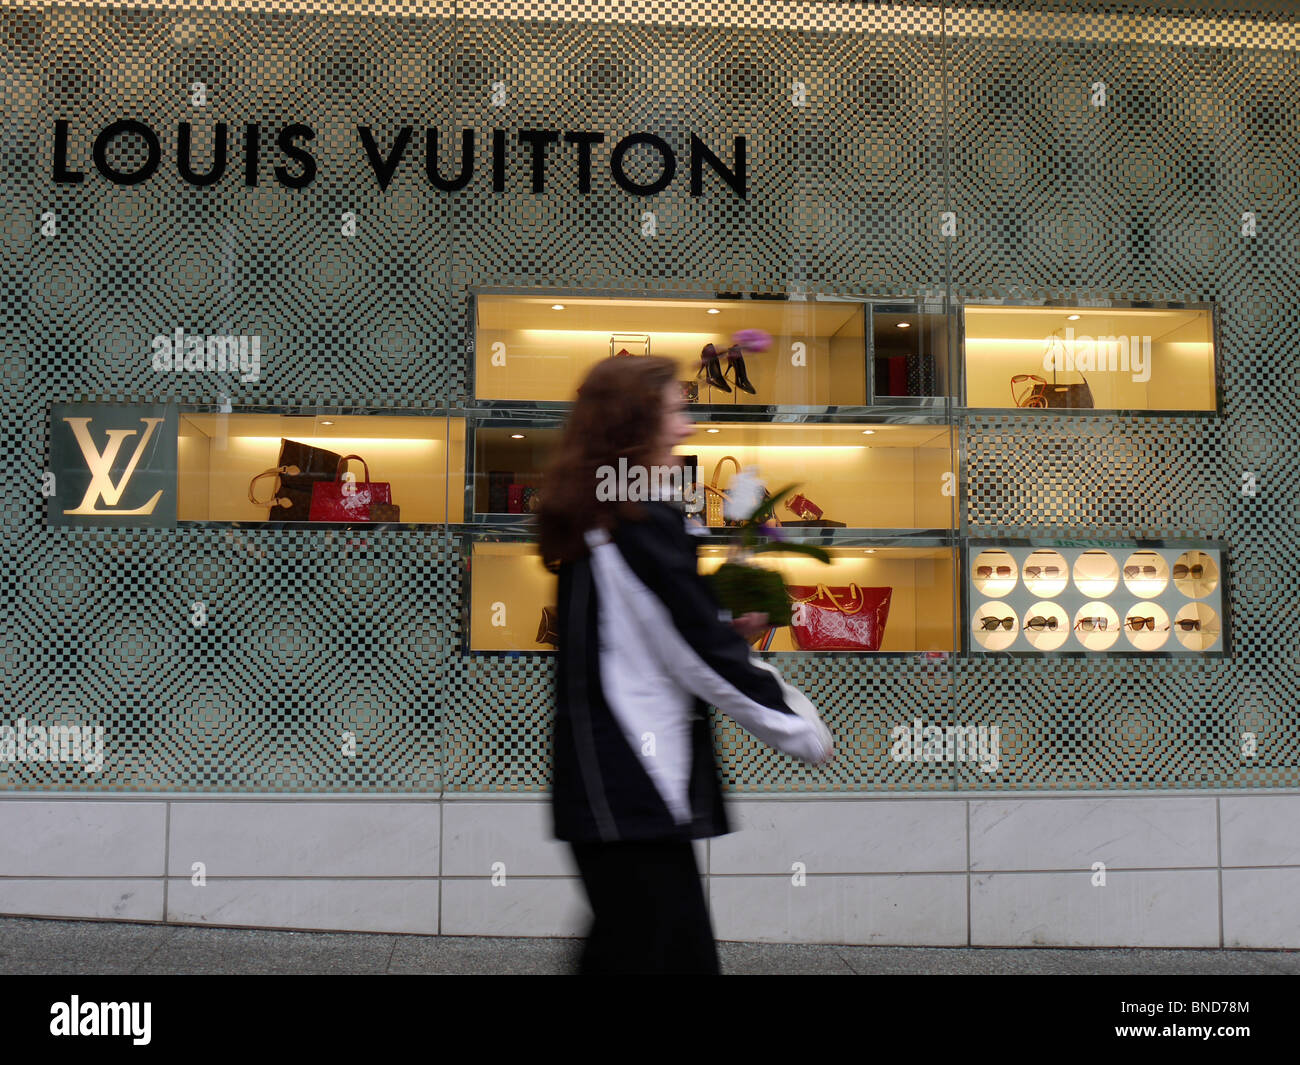 2,423 Louis Vuitton Bag Images, Stock Photos, 3D objects, & Vectors